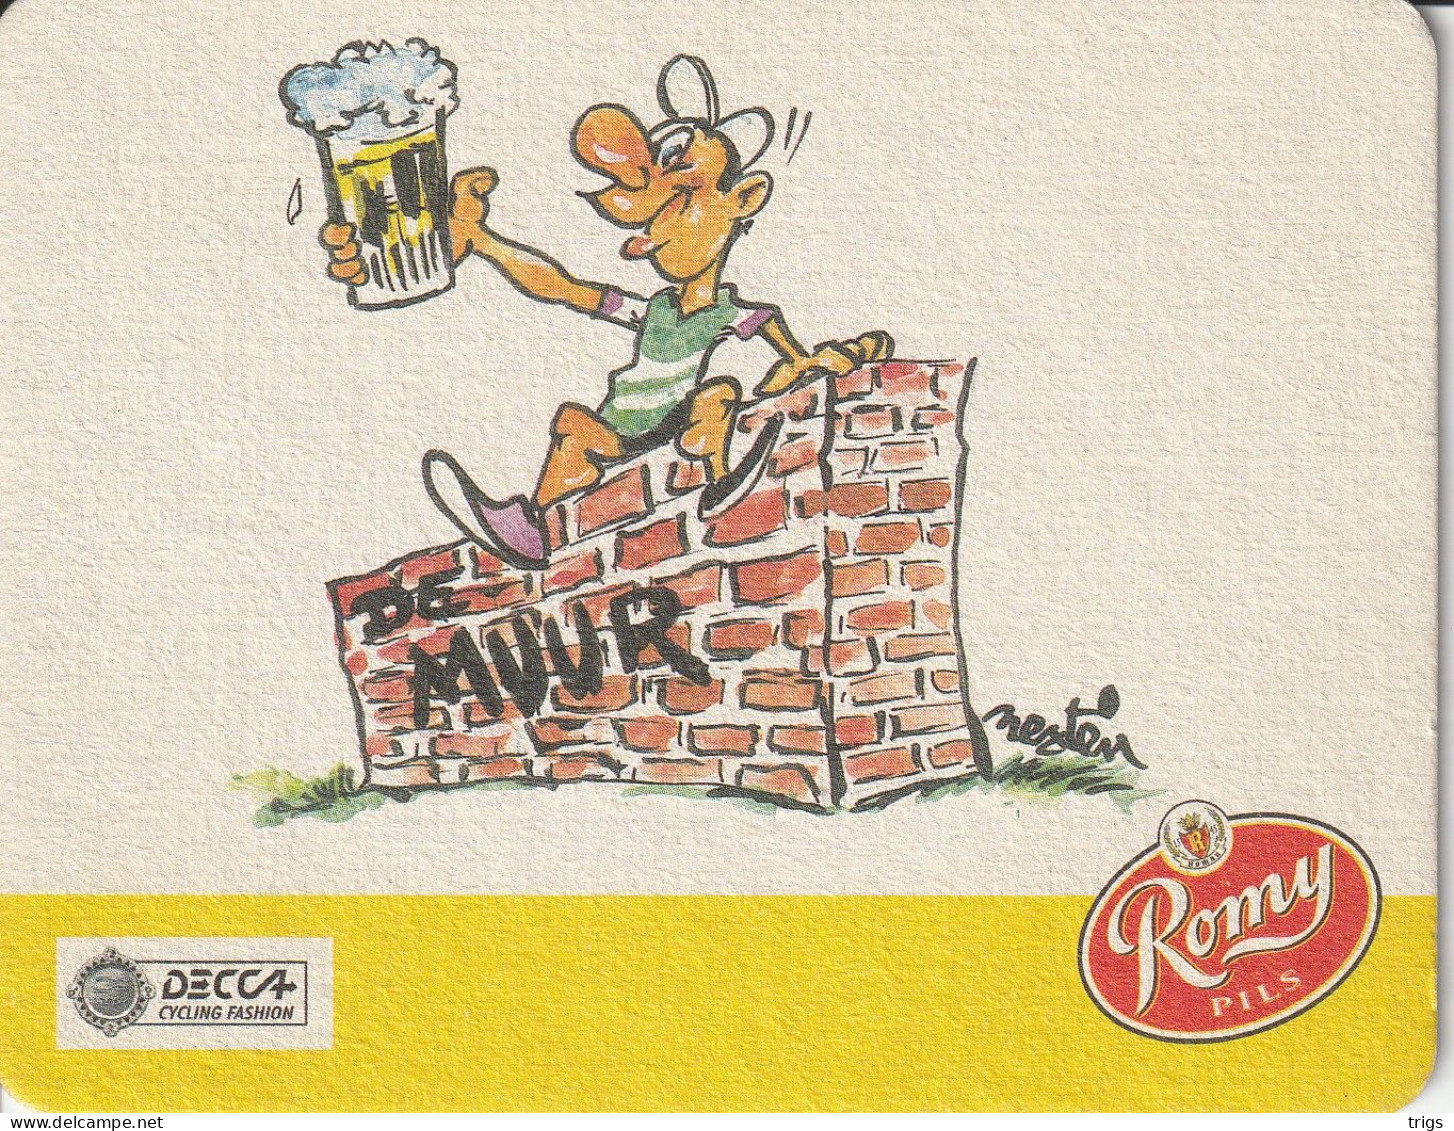 Romy Pils - Beer Mats